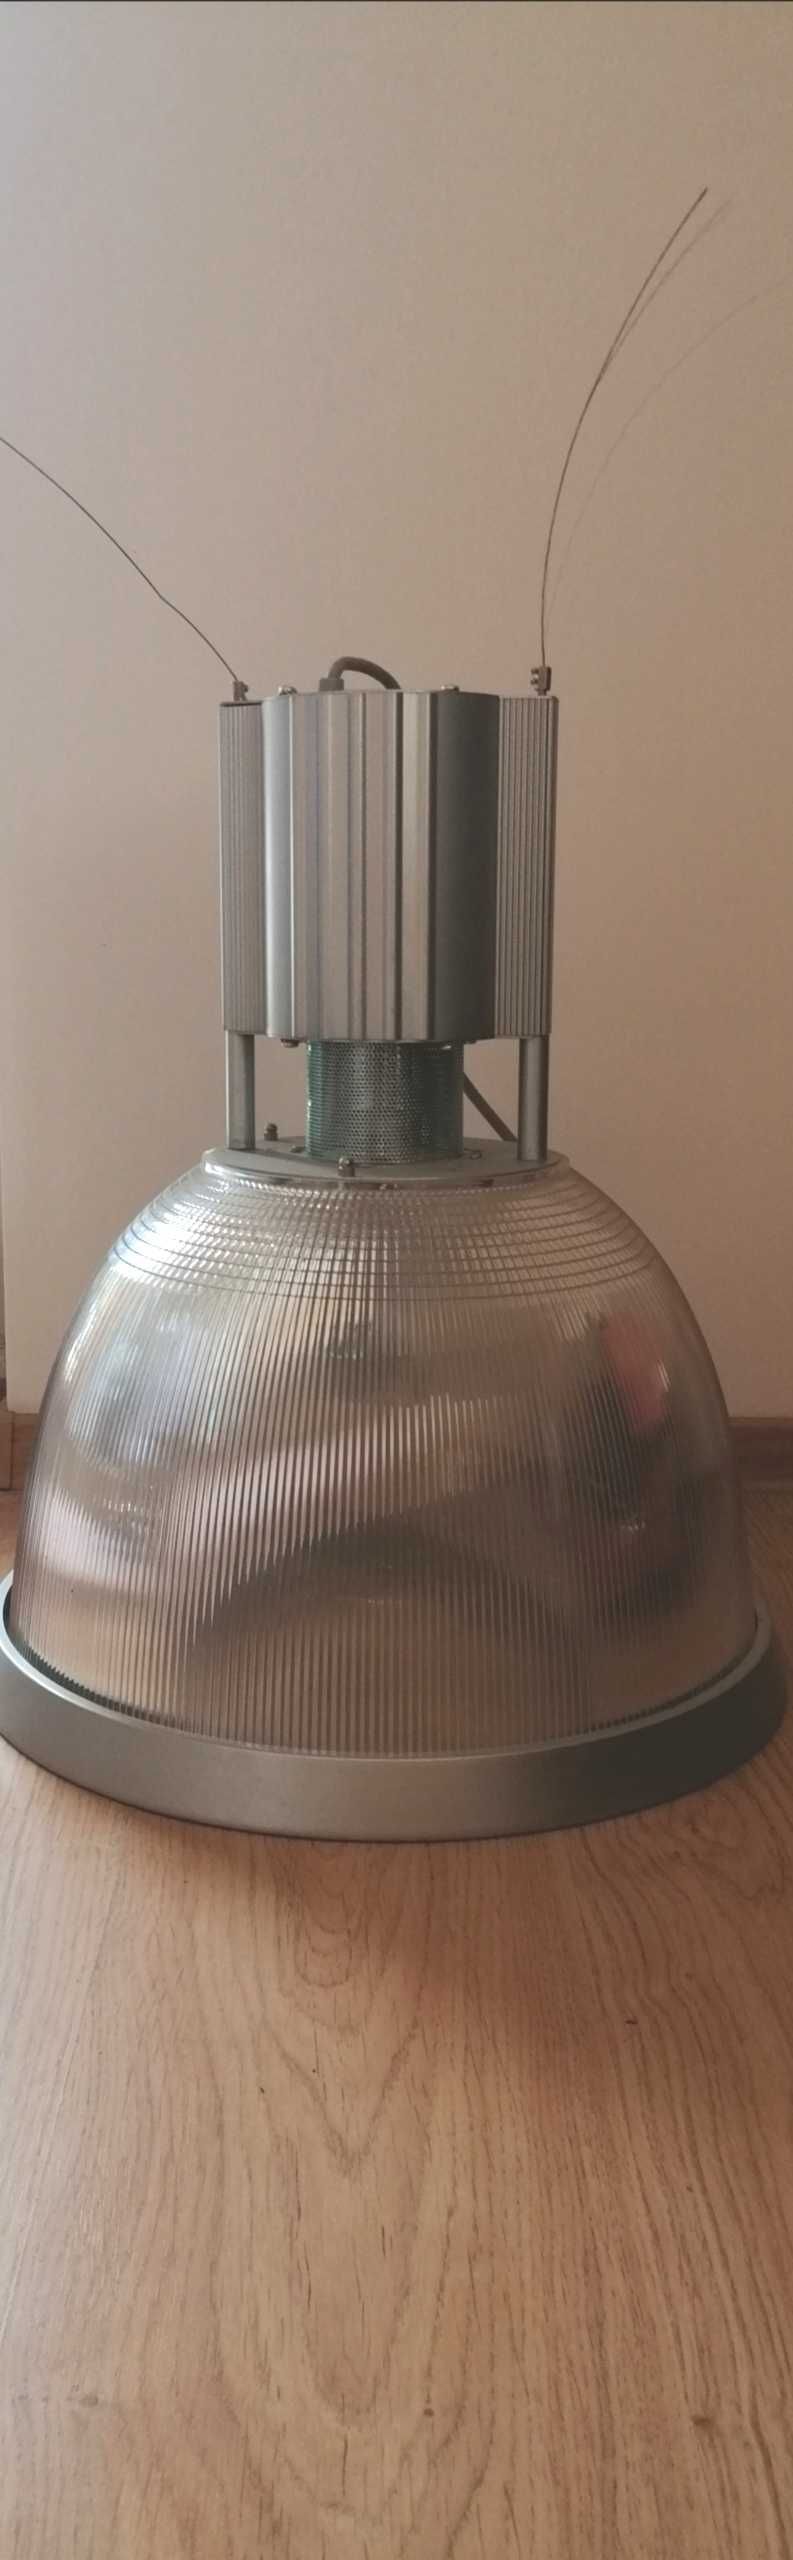 Lampa przemysłowa loft